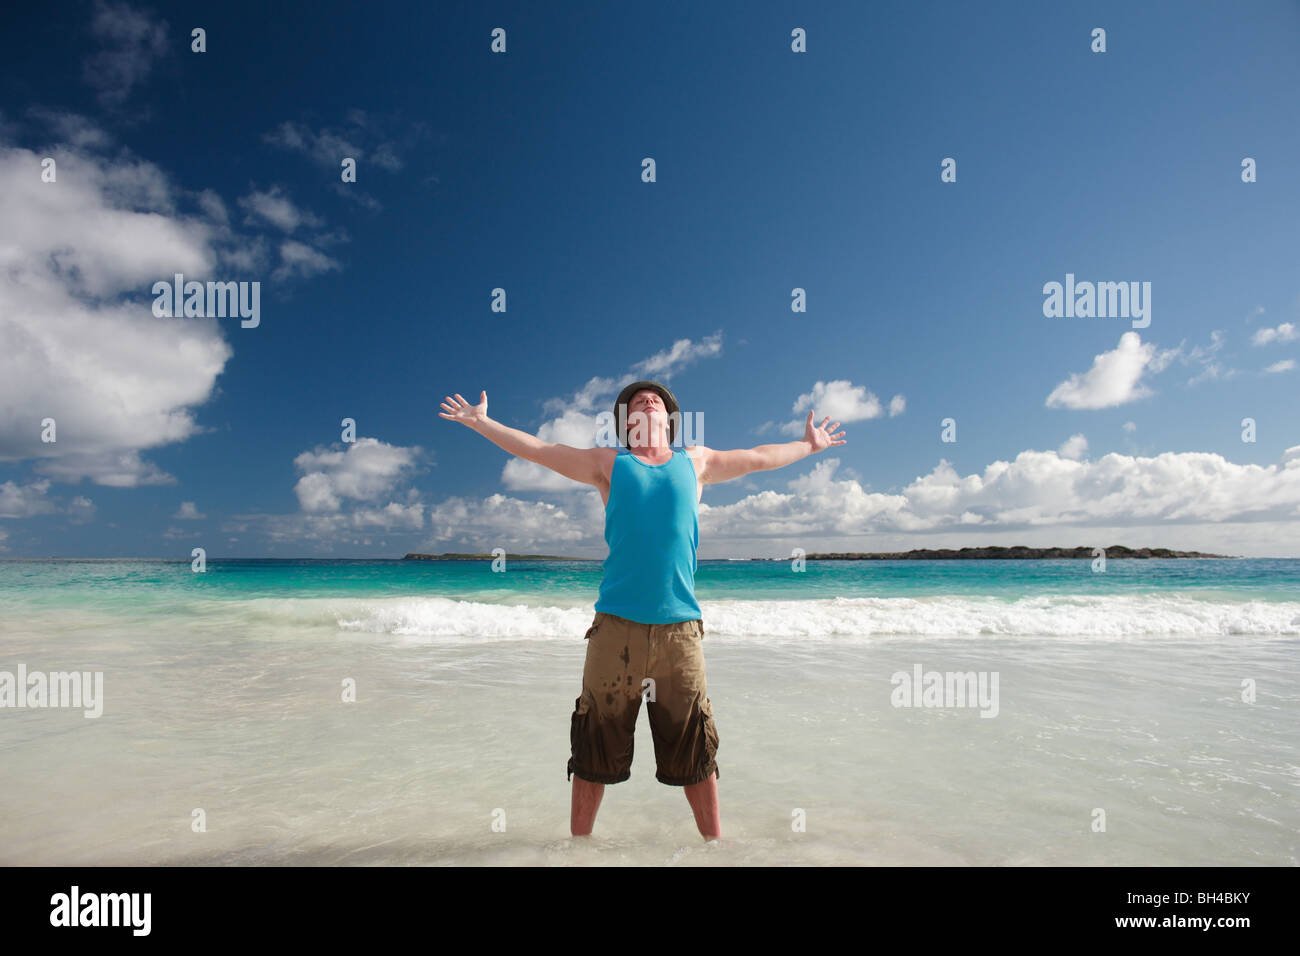 Jeune homme avec son bras levés à l'occasion vers le ciel sur une plage tropicale, smiling Banque D'Images